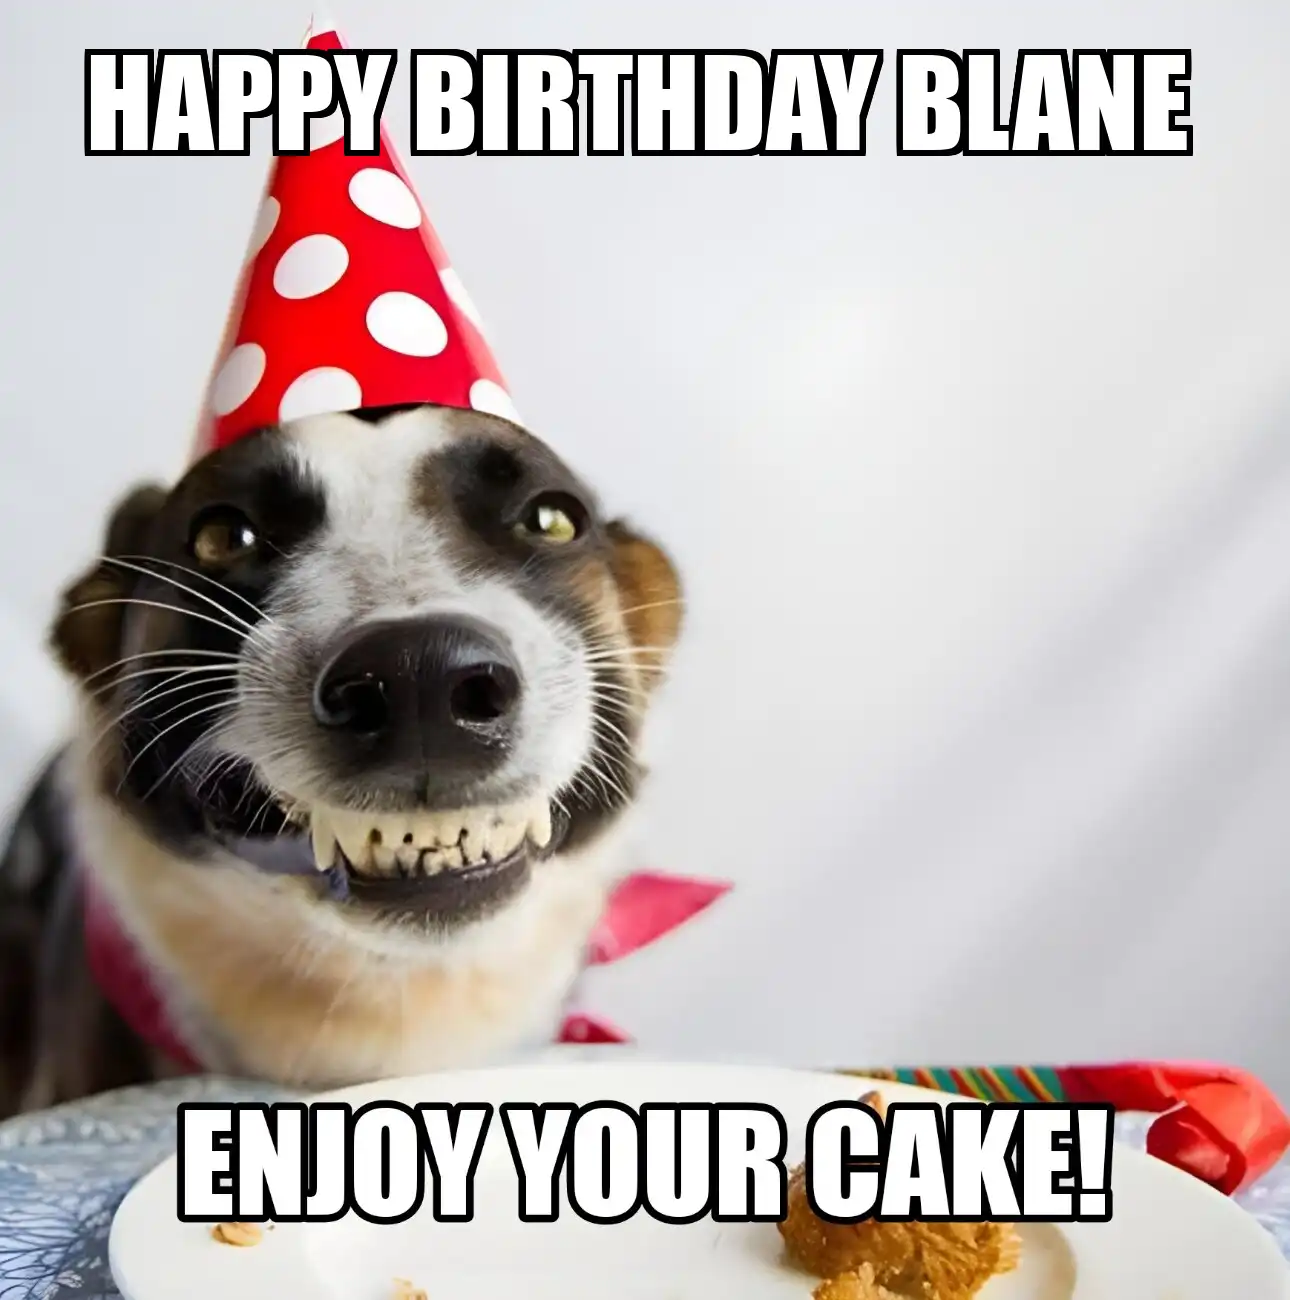 Happy Birthday Blane Enjoy Your Cake Dog Meme